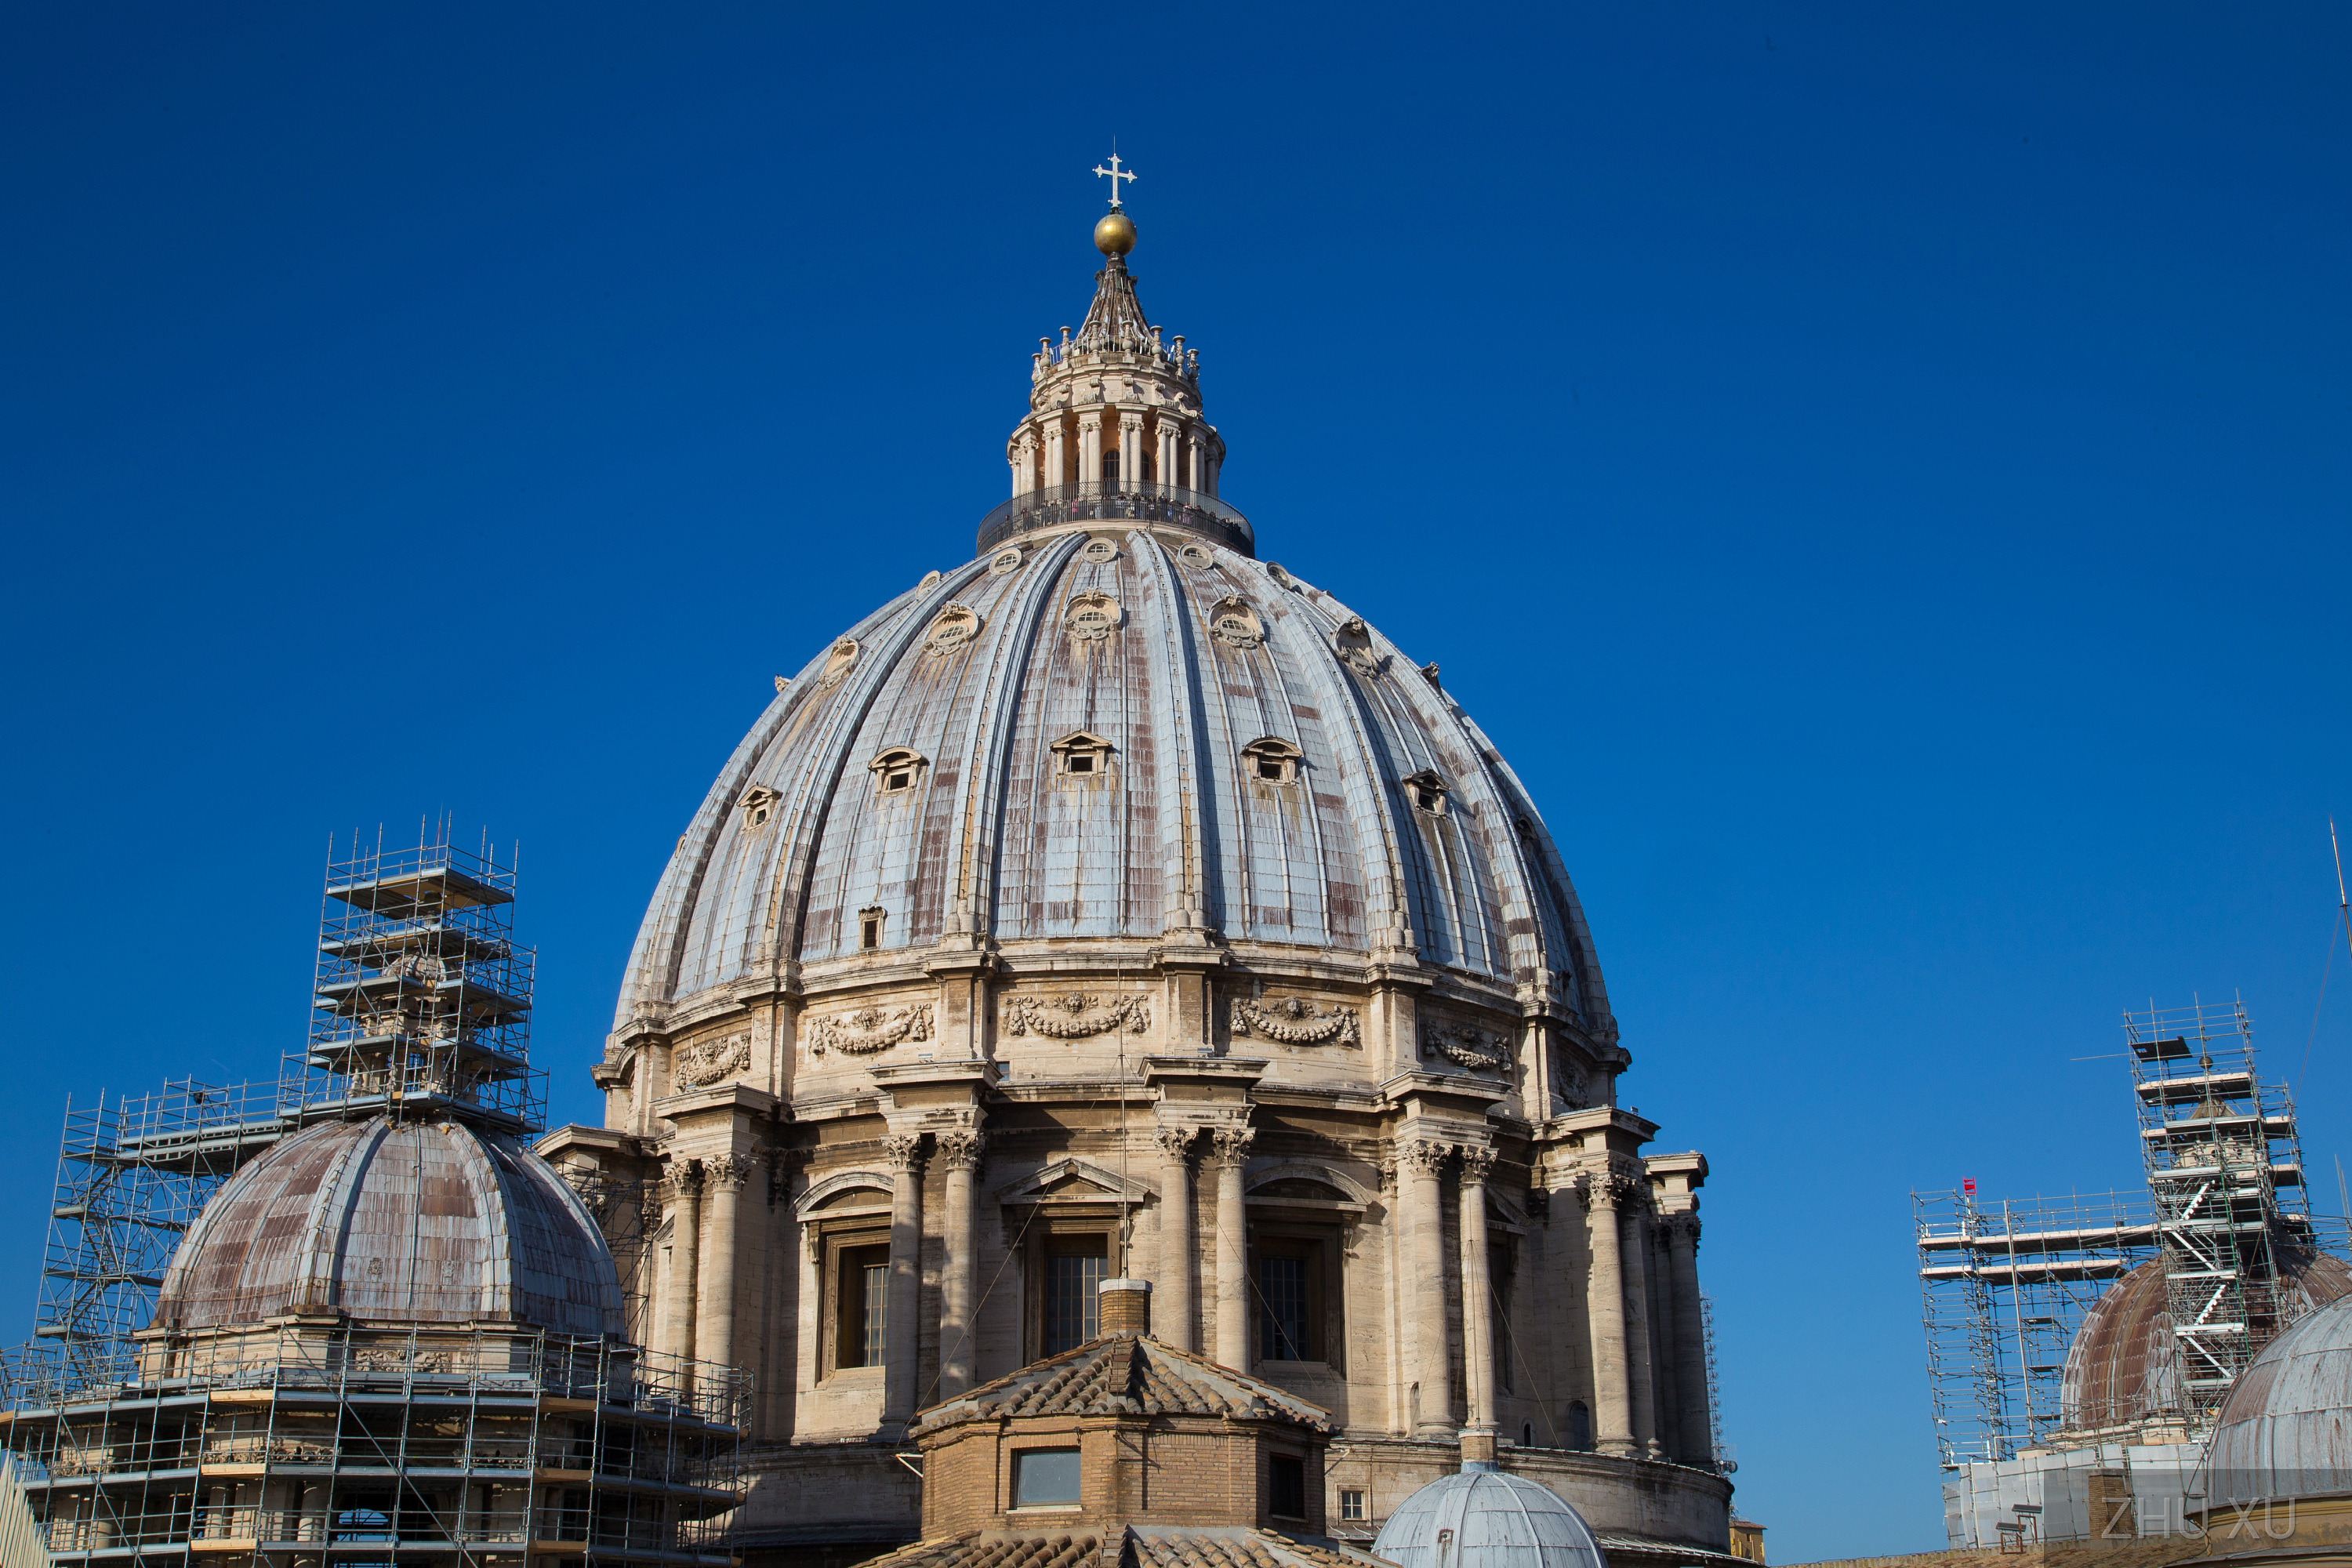 梵蒂冈博物馆展出从地震瓦砾中重生的十字架 - 梵蒂冈新闻网